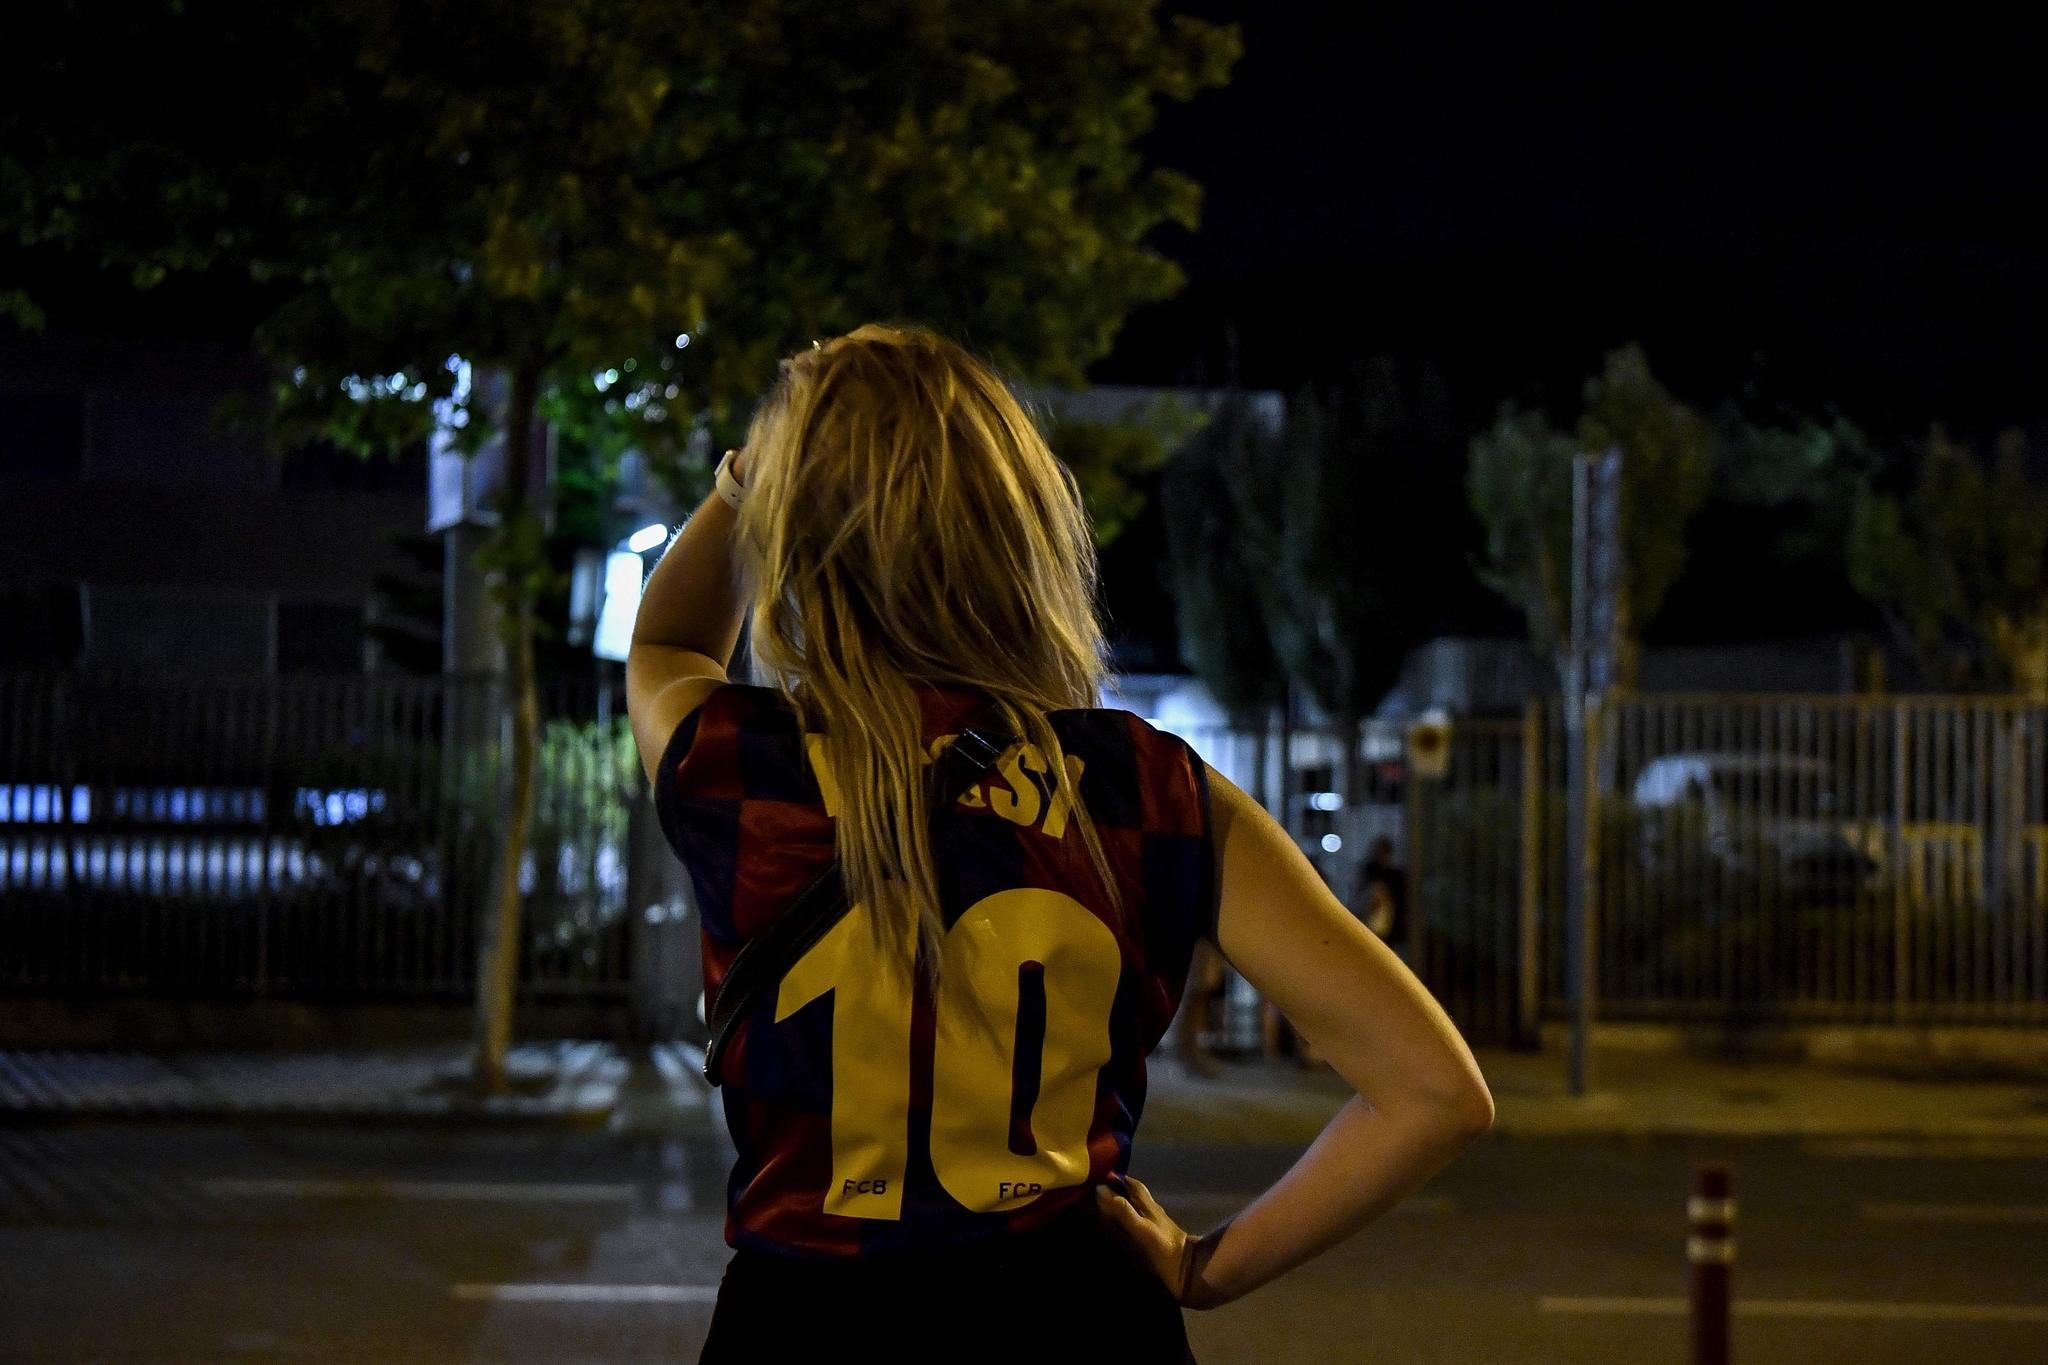 MISNØYE: En rekke mennesker samlet seg utenfor klubbens kontorer torsdag kveld etter at det ble klart at Lionel Messi forlater Barcelona. 